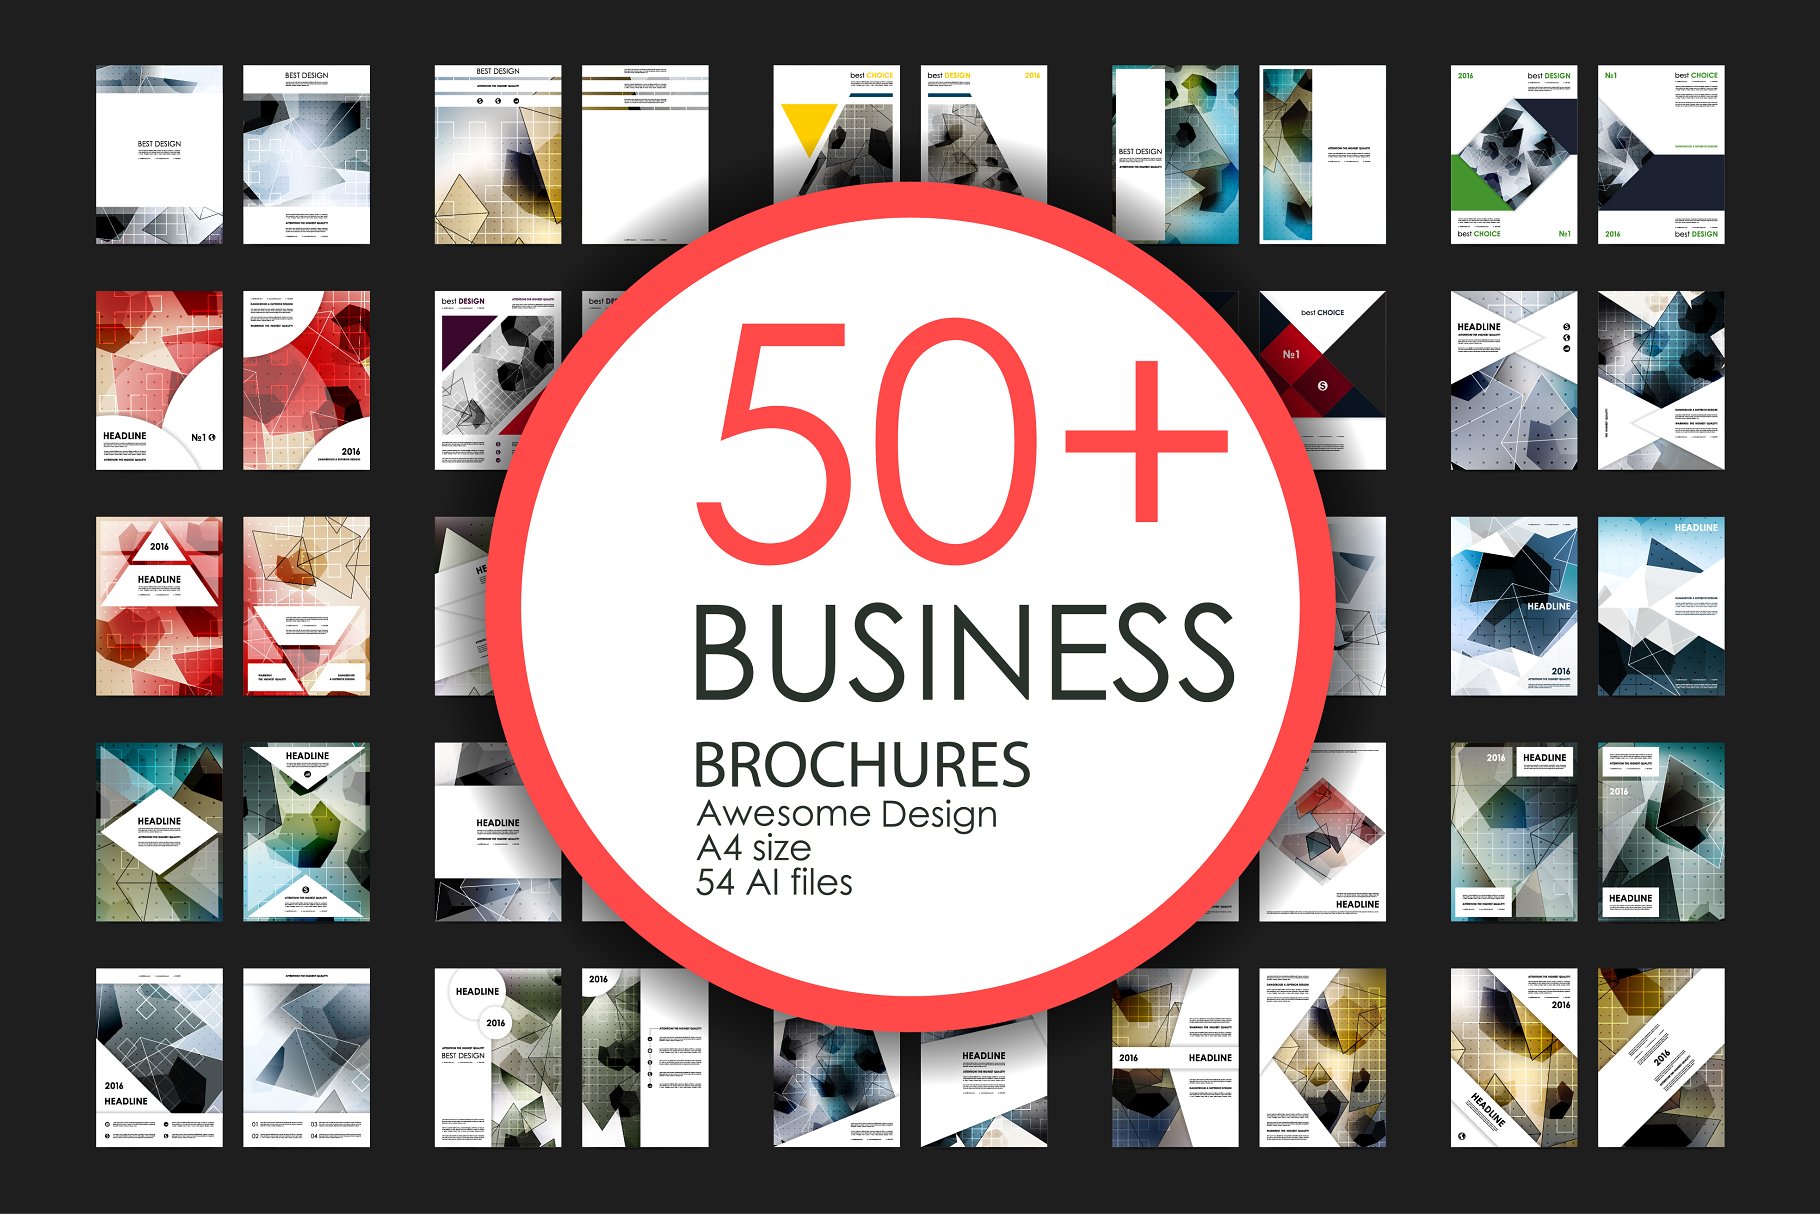 极力推荐：50+企业商业介绍宣传小册子模板 50+ Business Brochures Bundle插图